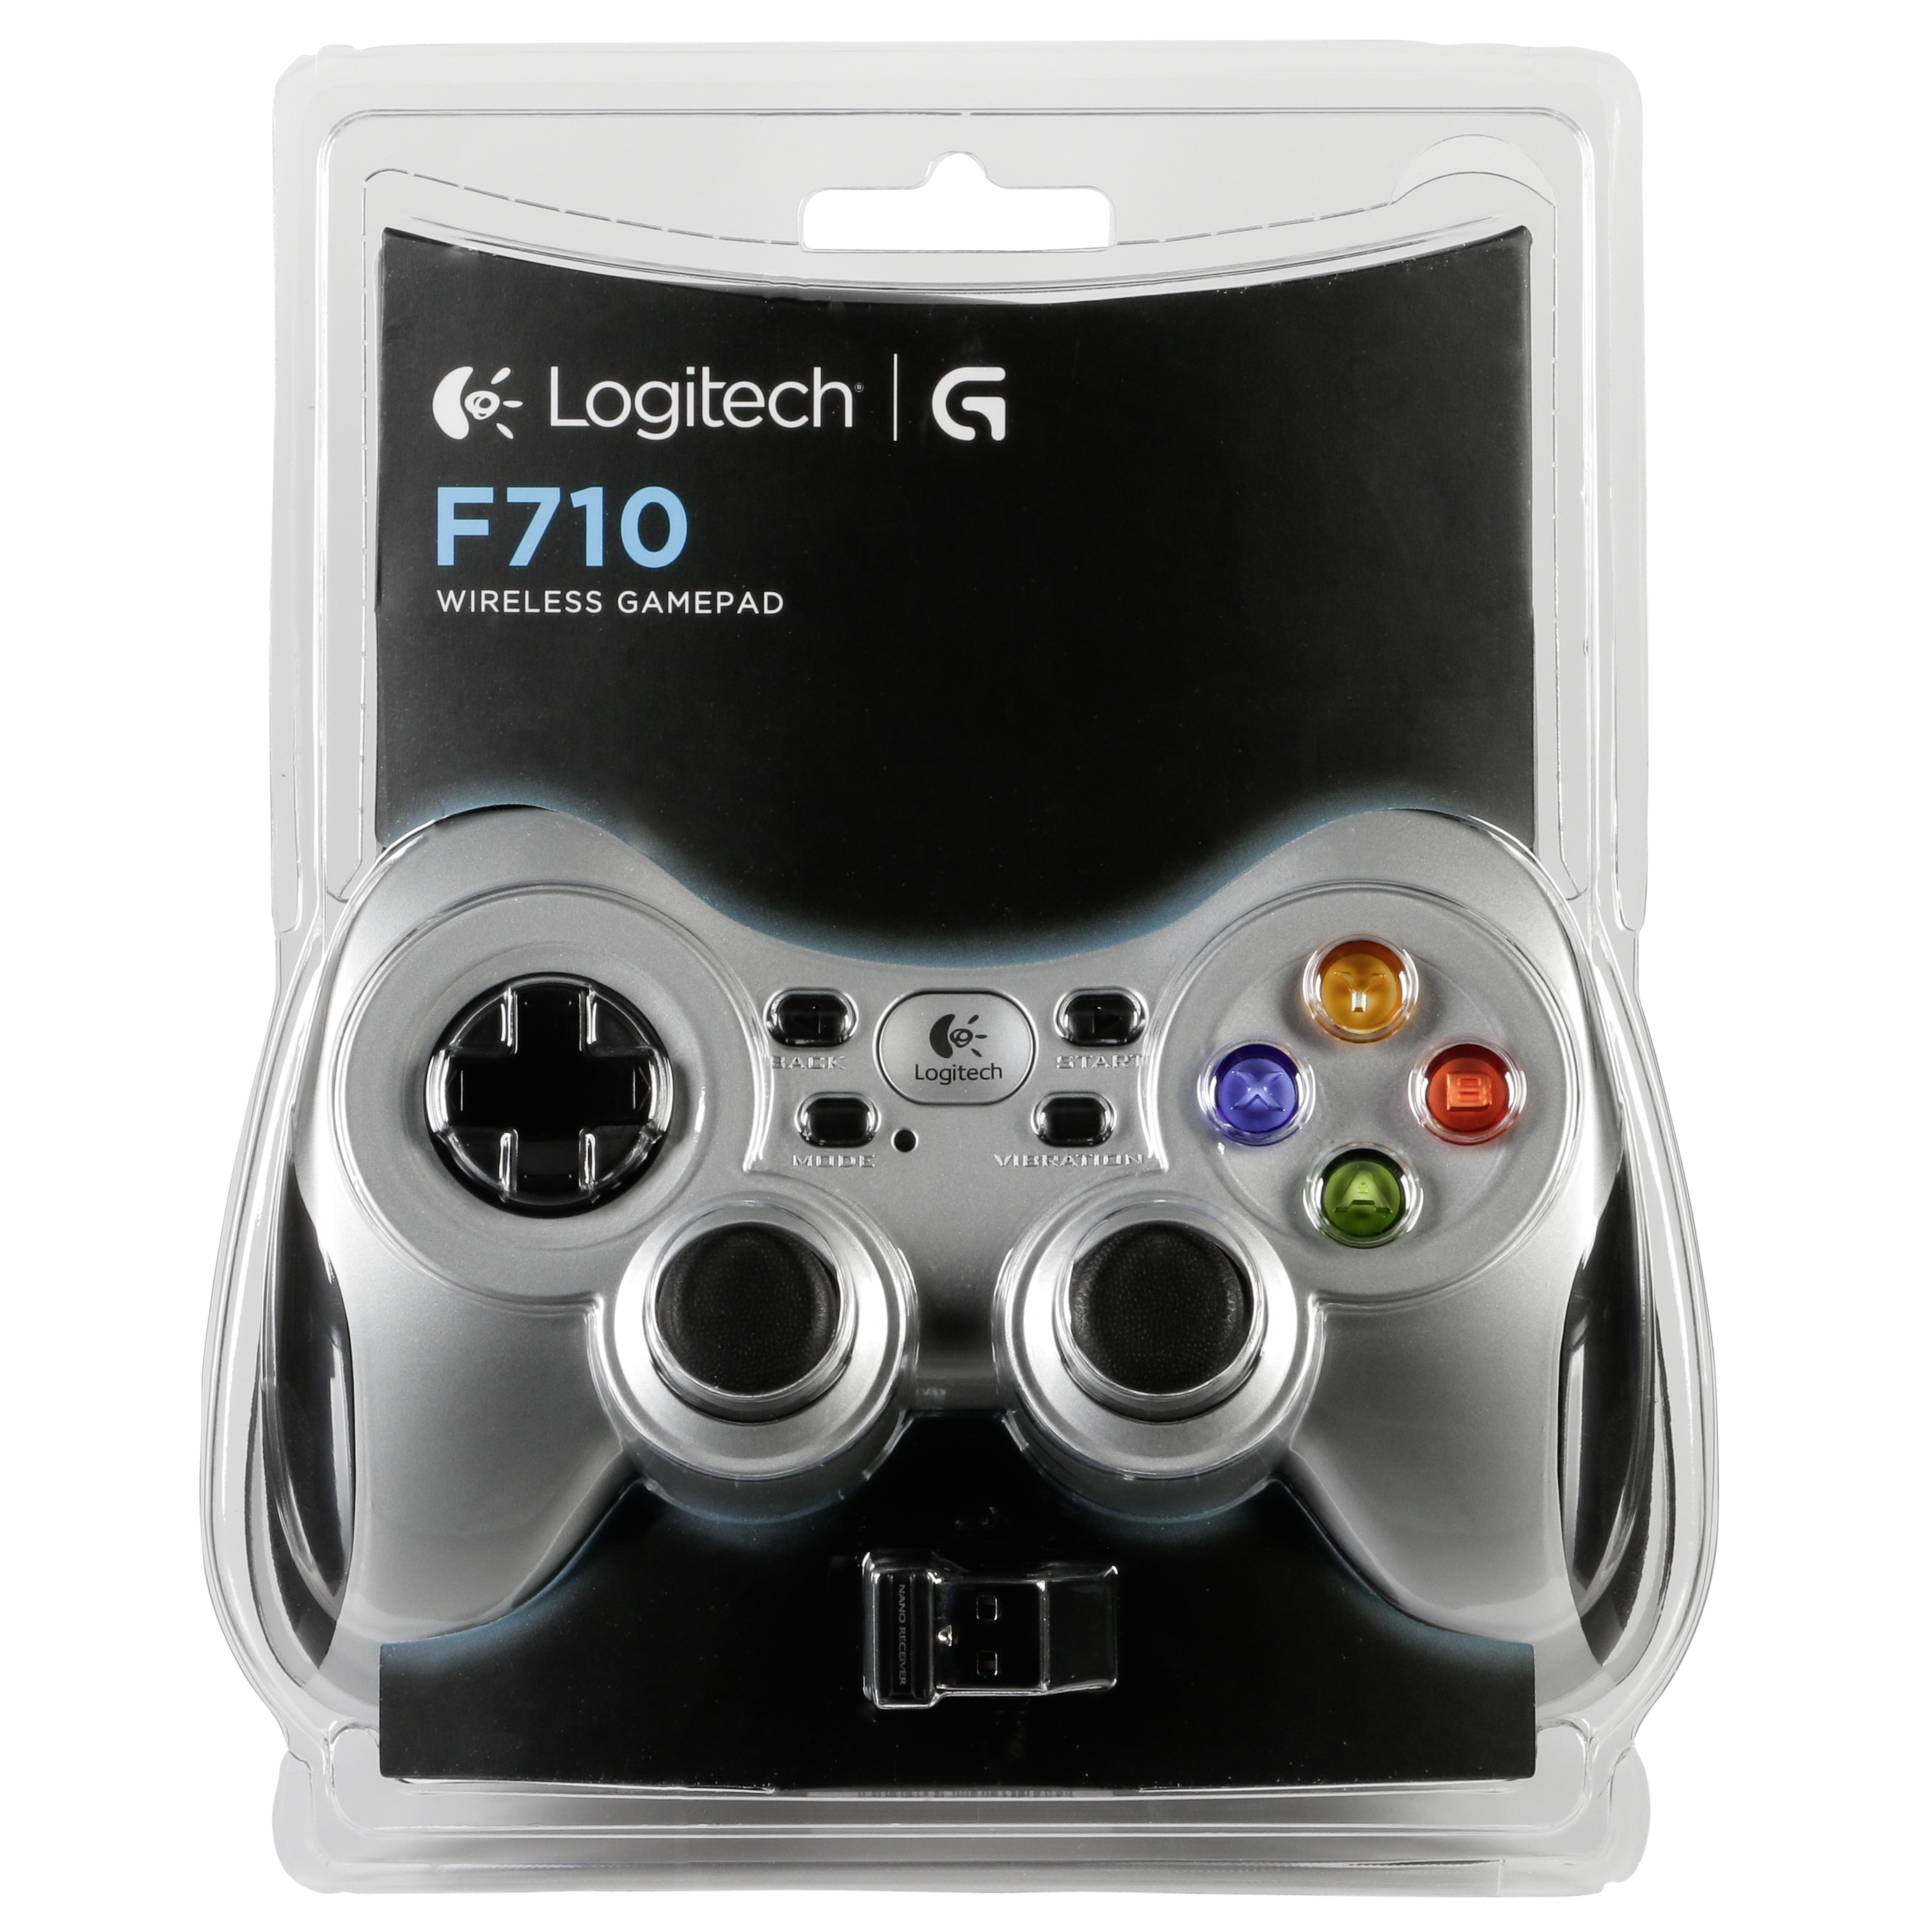 Logitech F710 Wireless Gamepad, USB 2.0 